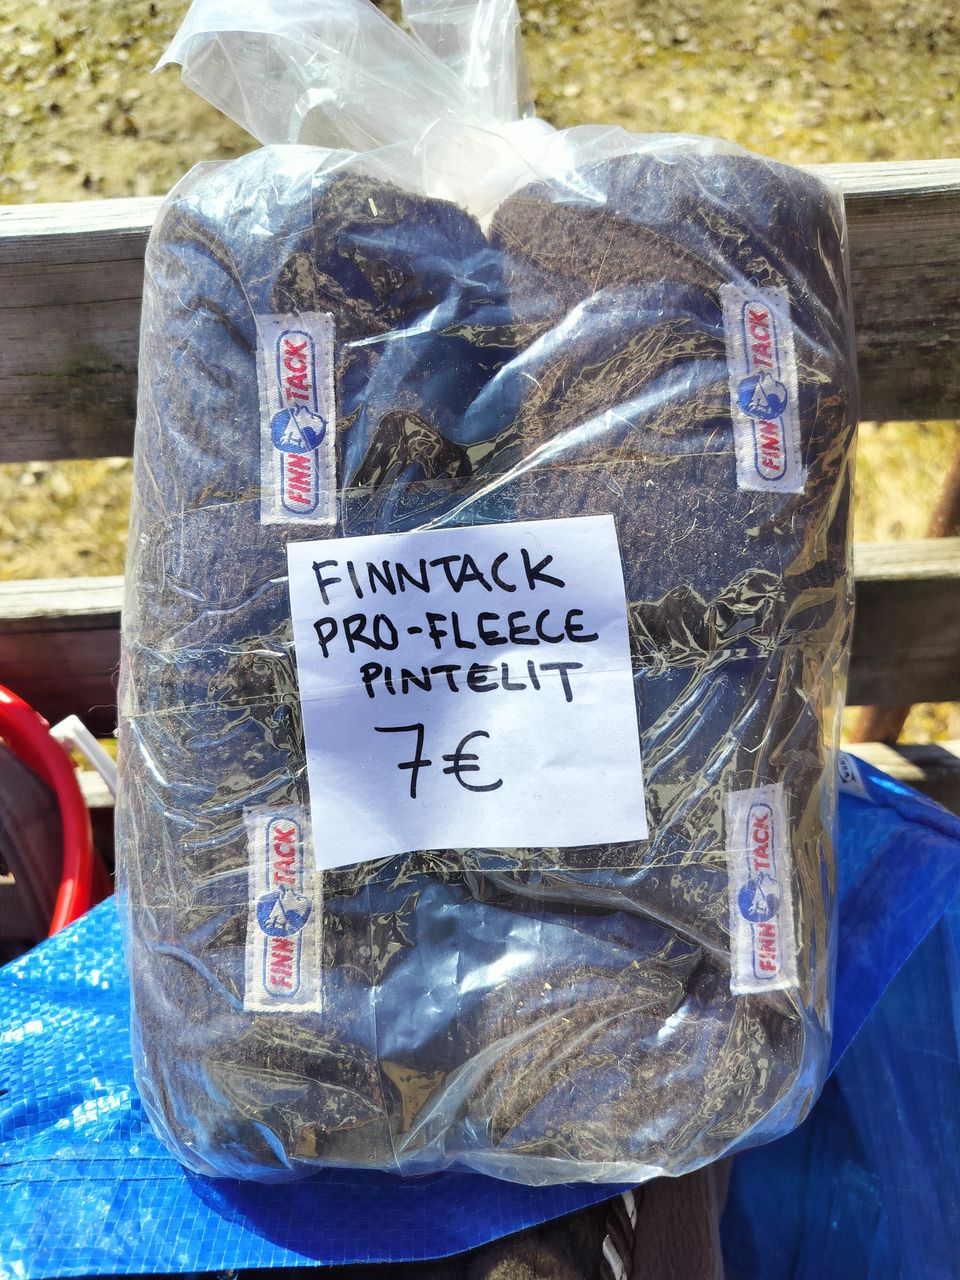 Finntack Pro-fleecepintelit